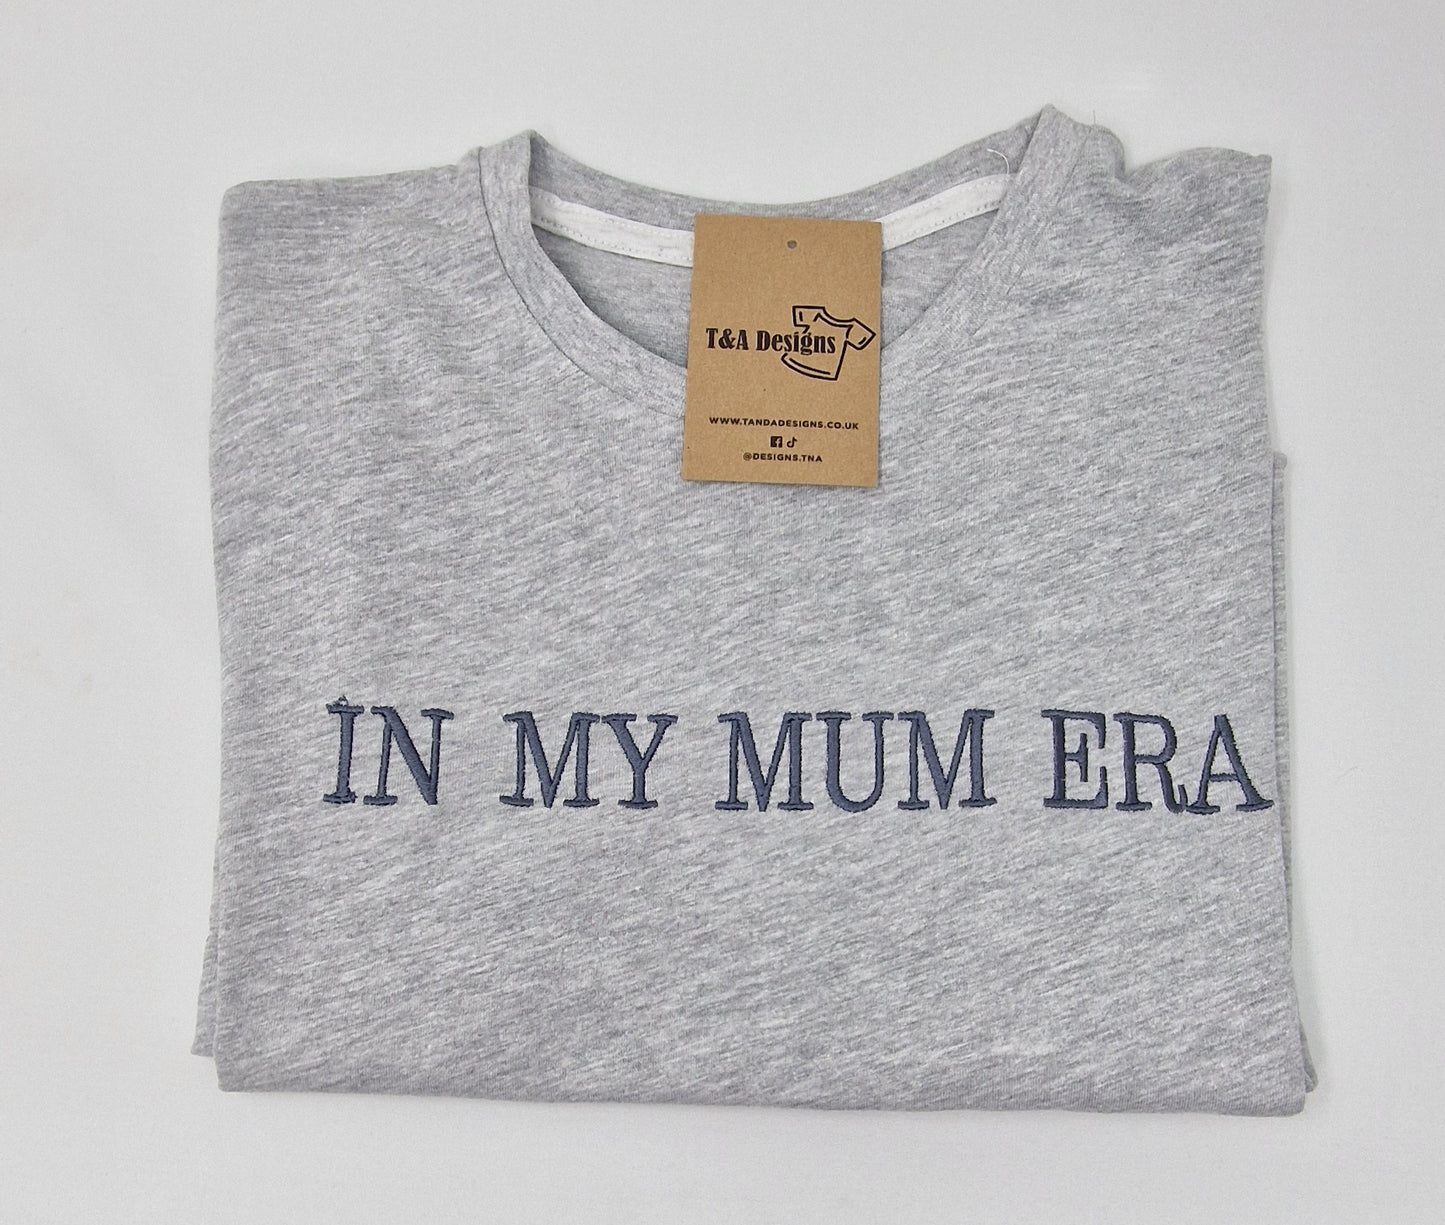 In my Mum Era t-shirt